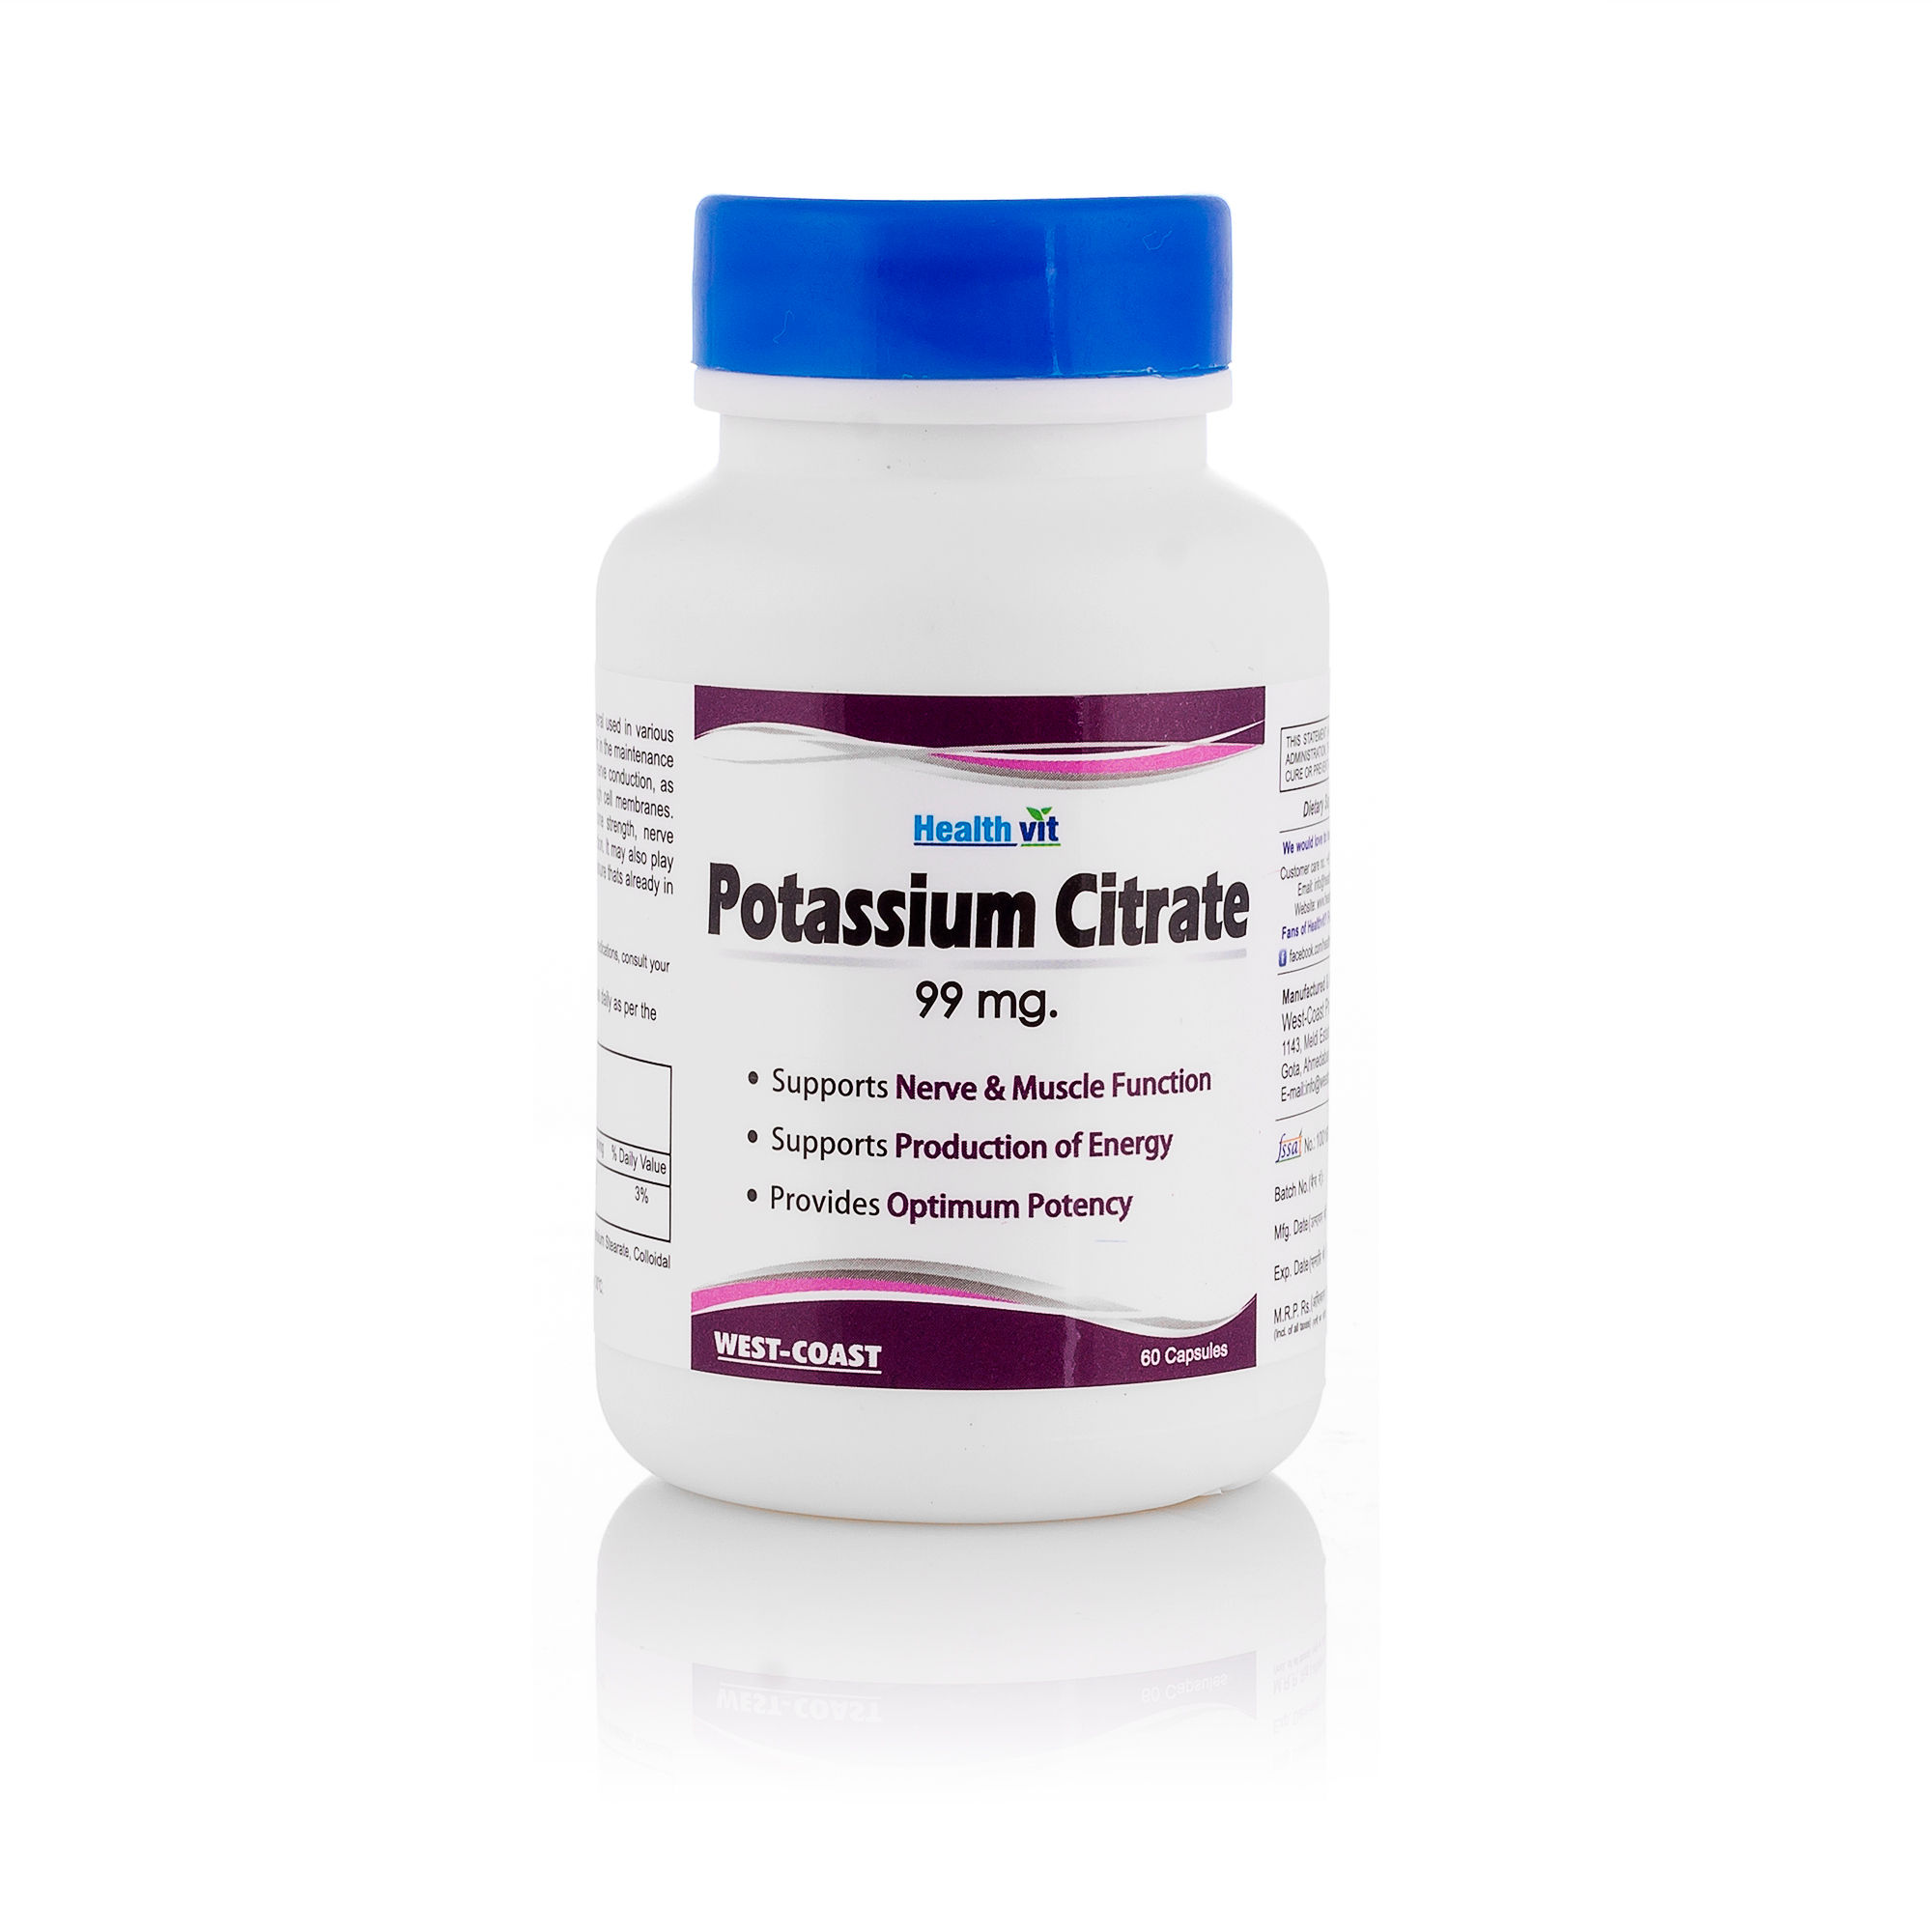 HealthVit Potassium Citrate 99Mg 60 Capsules